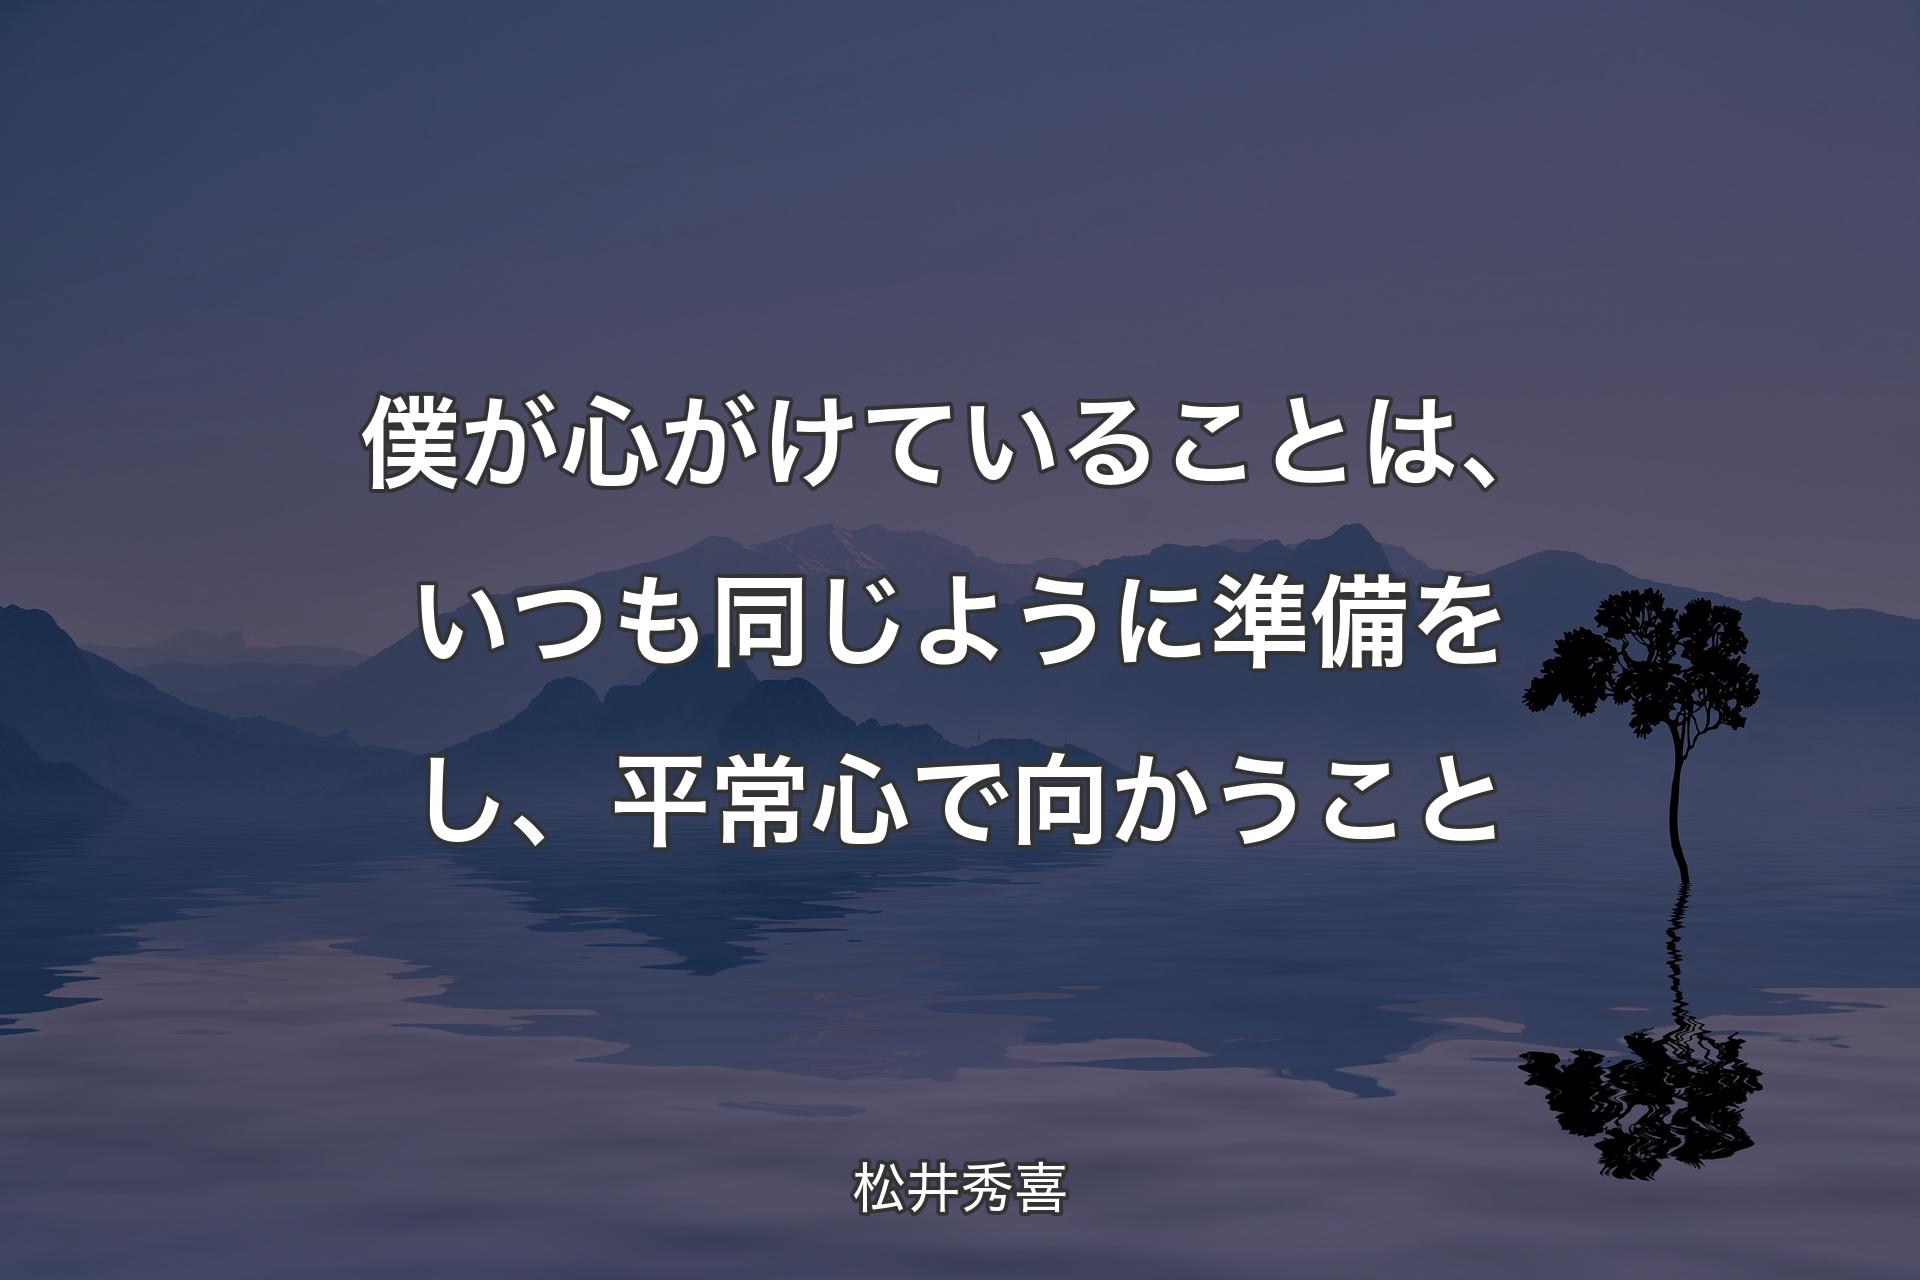 【背景4】僕が心がけていることは、いつも同じように準備をし、平常心で向かうこと - 松井秀喜